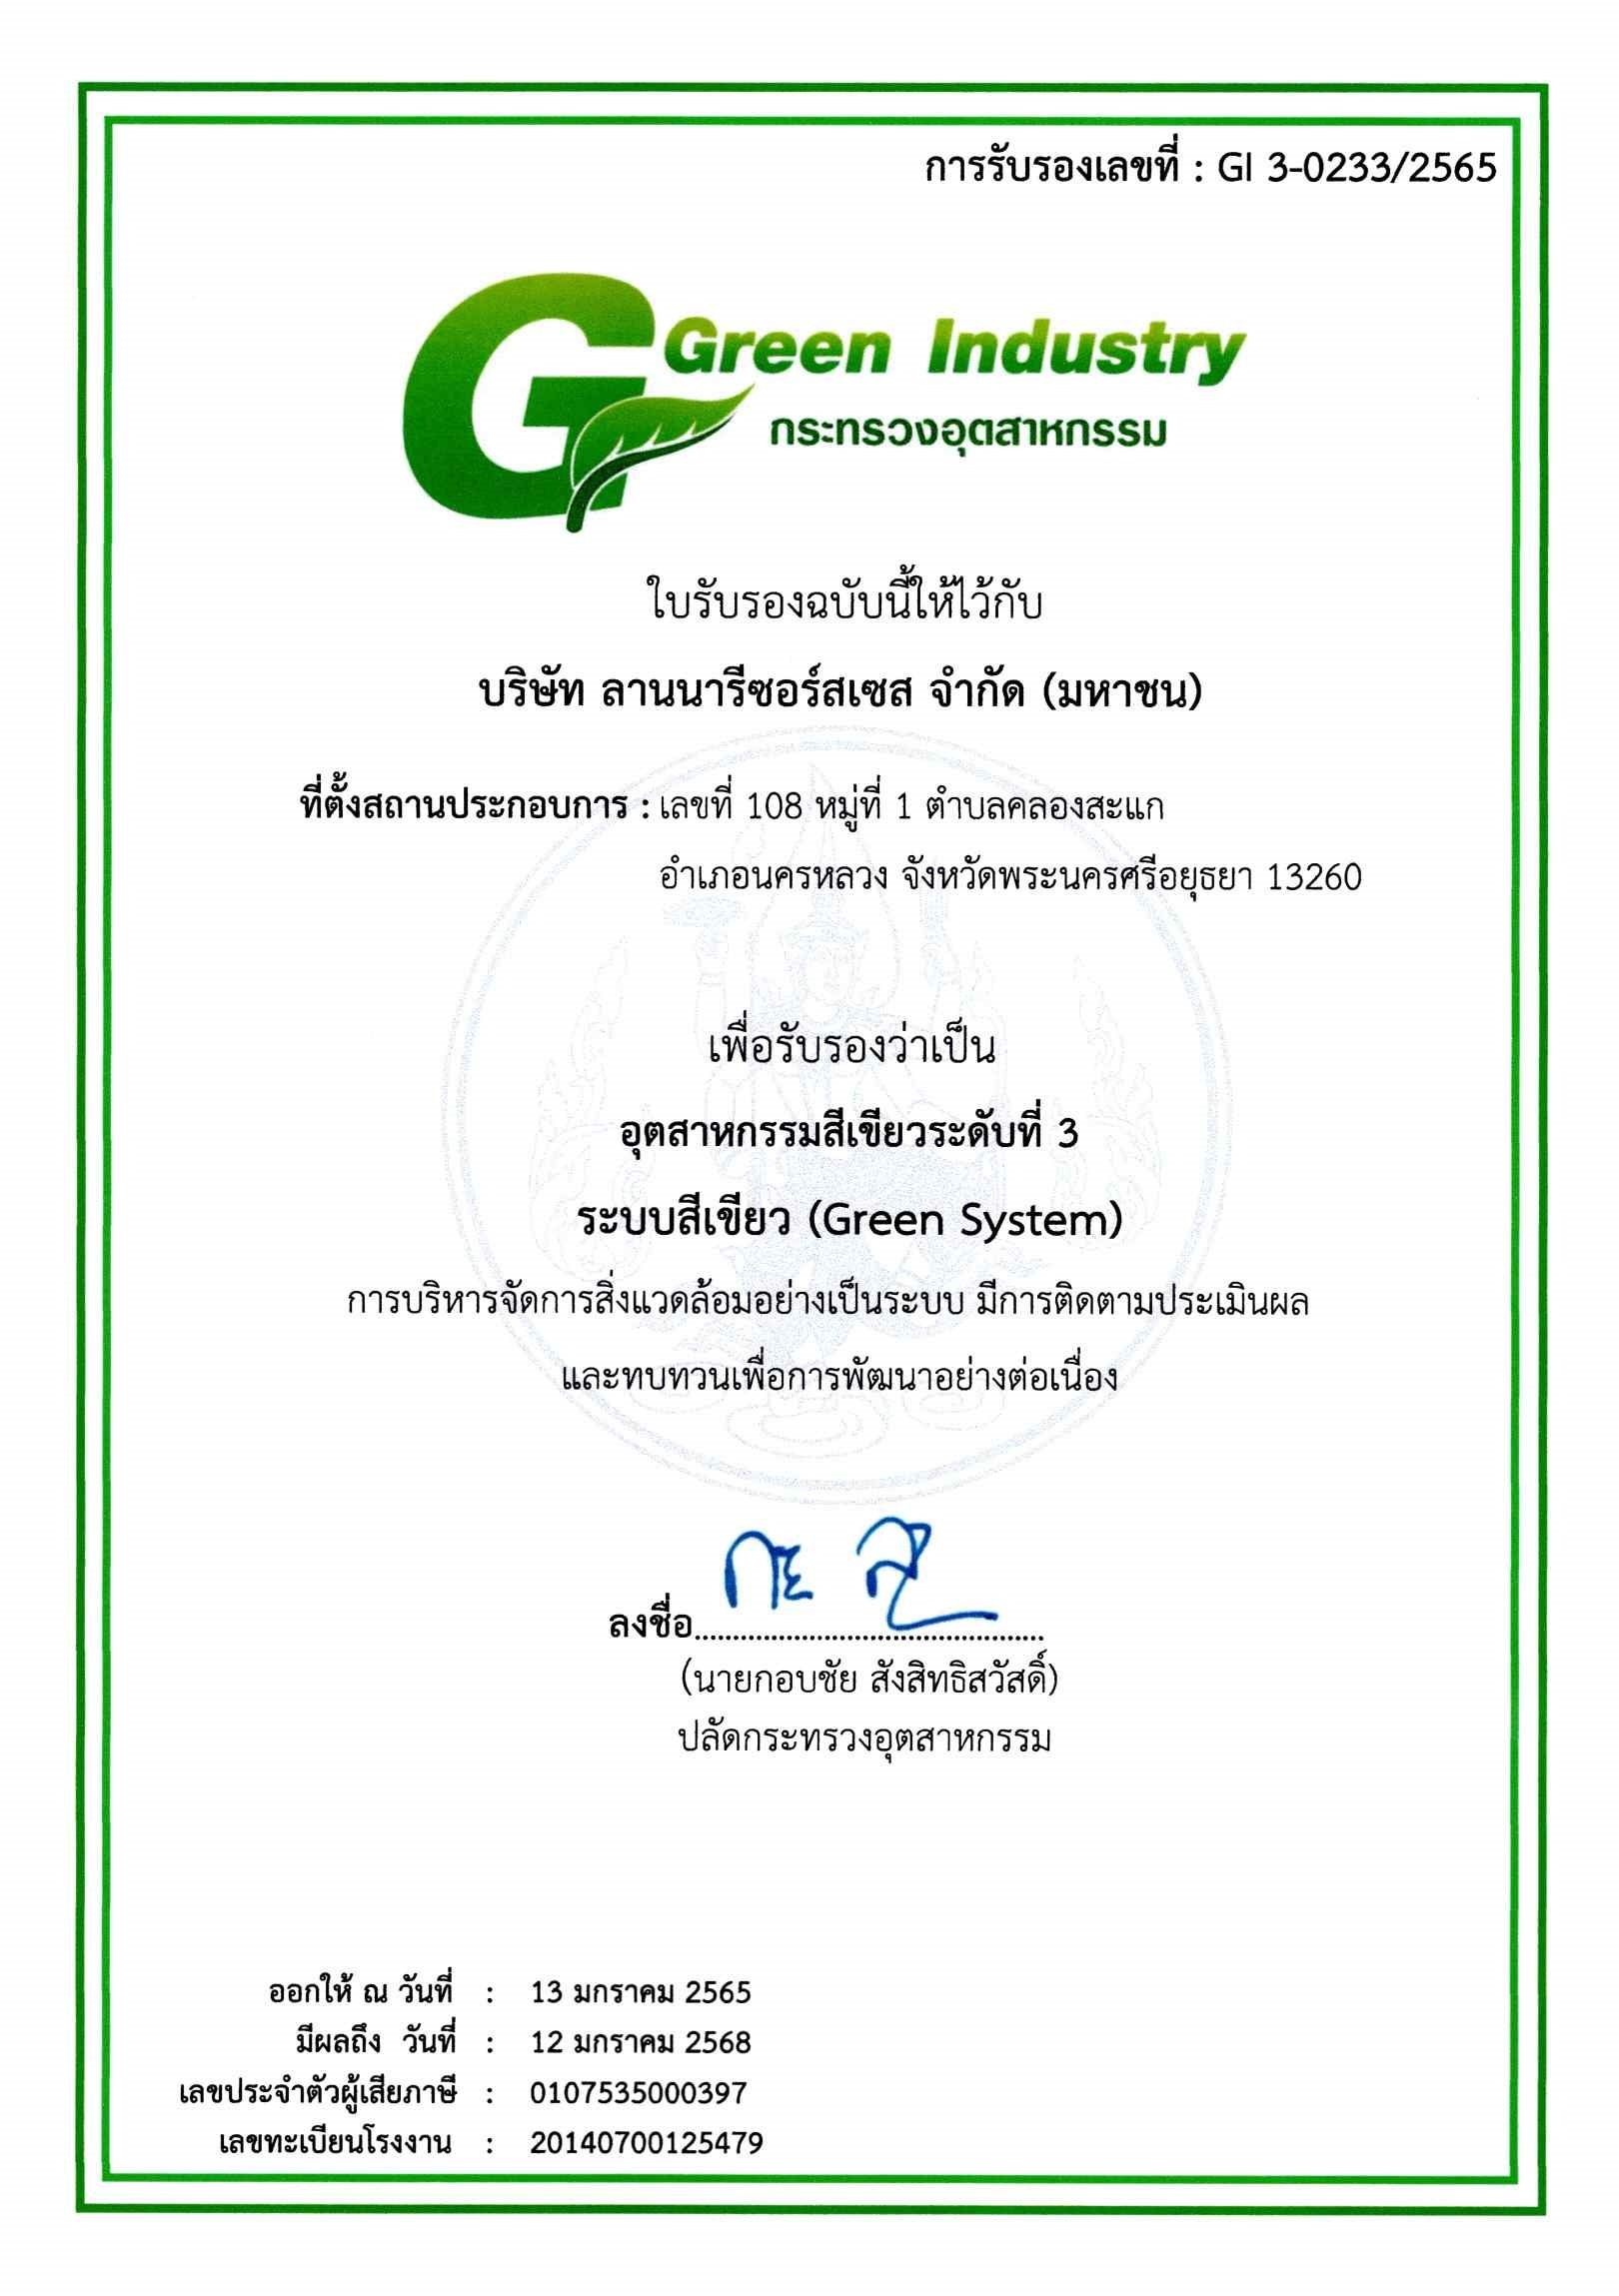 บริษัทฯ ได้รับการรับรองว่าเป็น อุตสาหกรรมสีเขียวระดับที่ 3 ด้านระบบสีเขียว (GREEN SYSTEM)